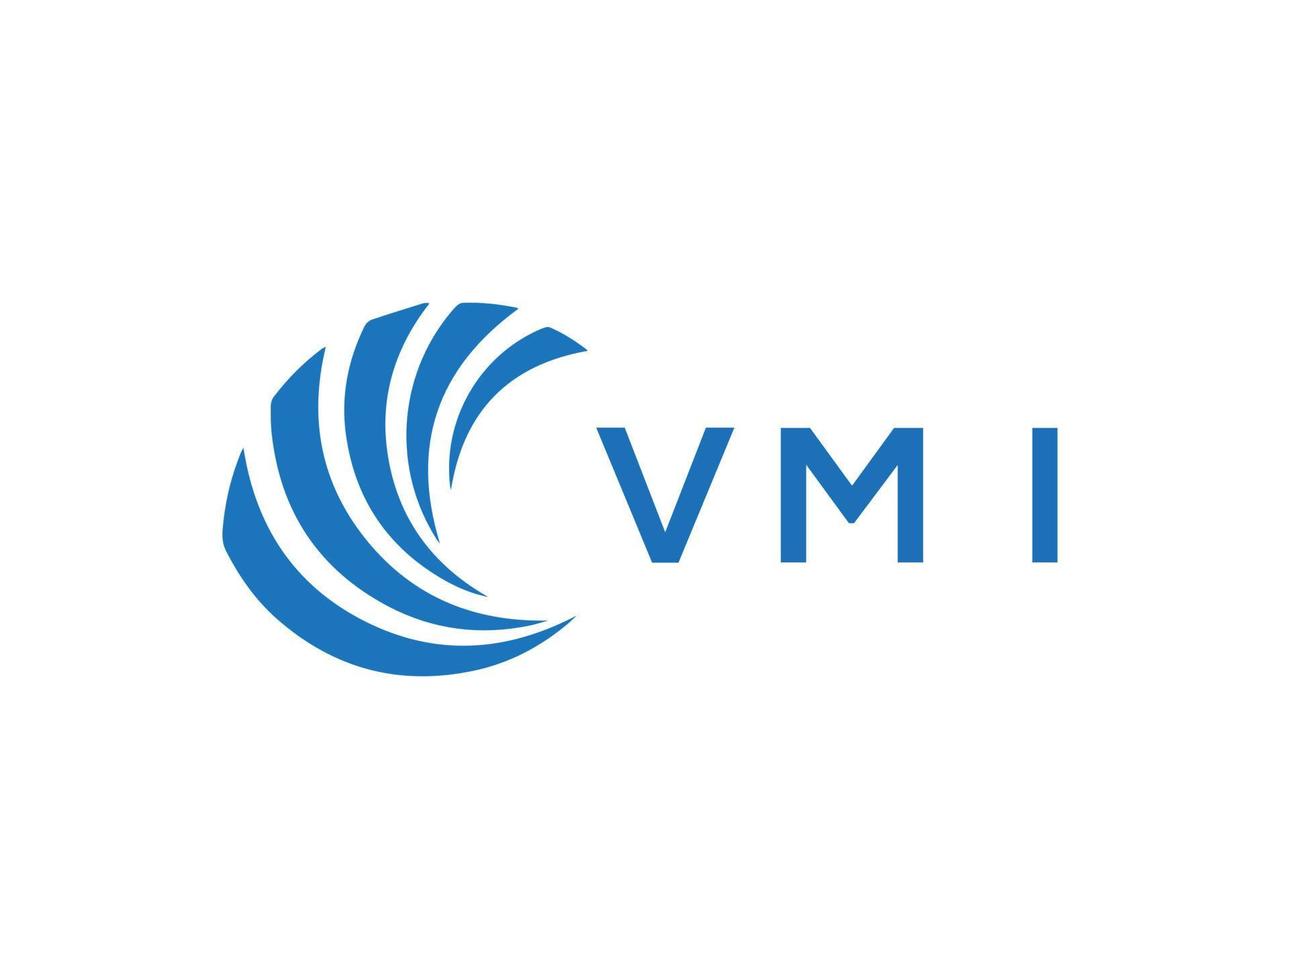 VMI letter logo design on white background. VMI creative circle letter logo concept. VMI letter design. vector